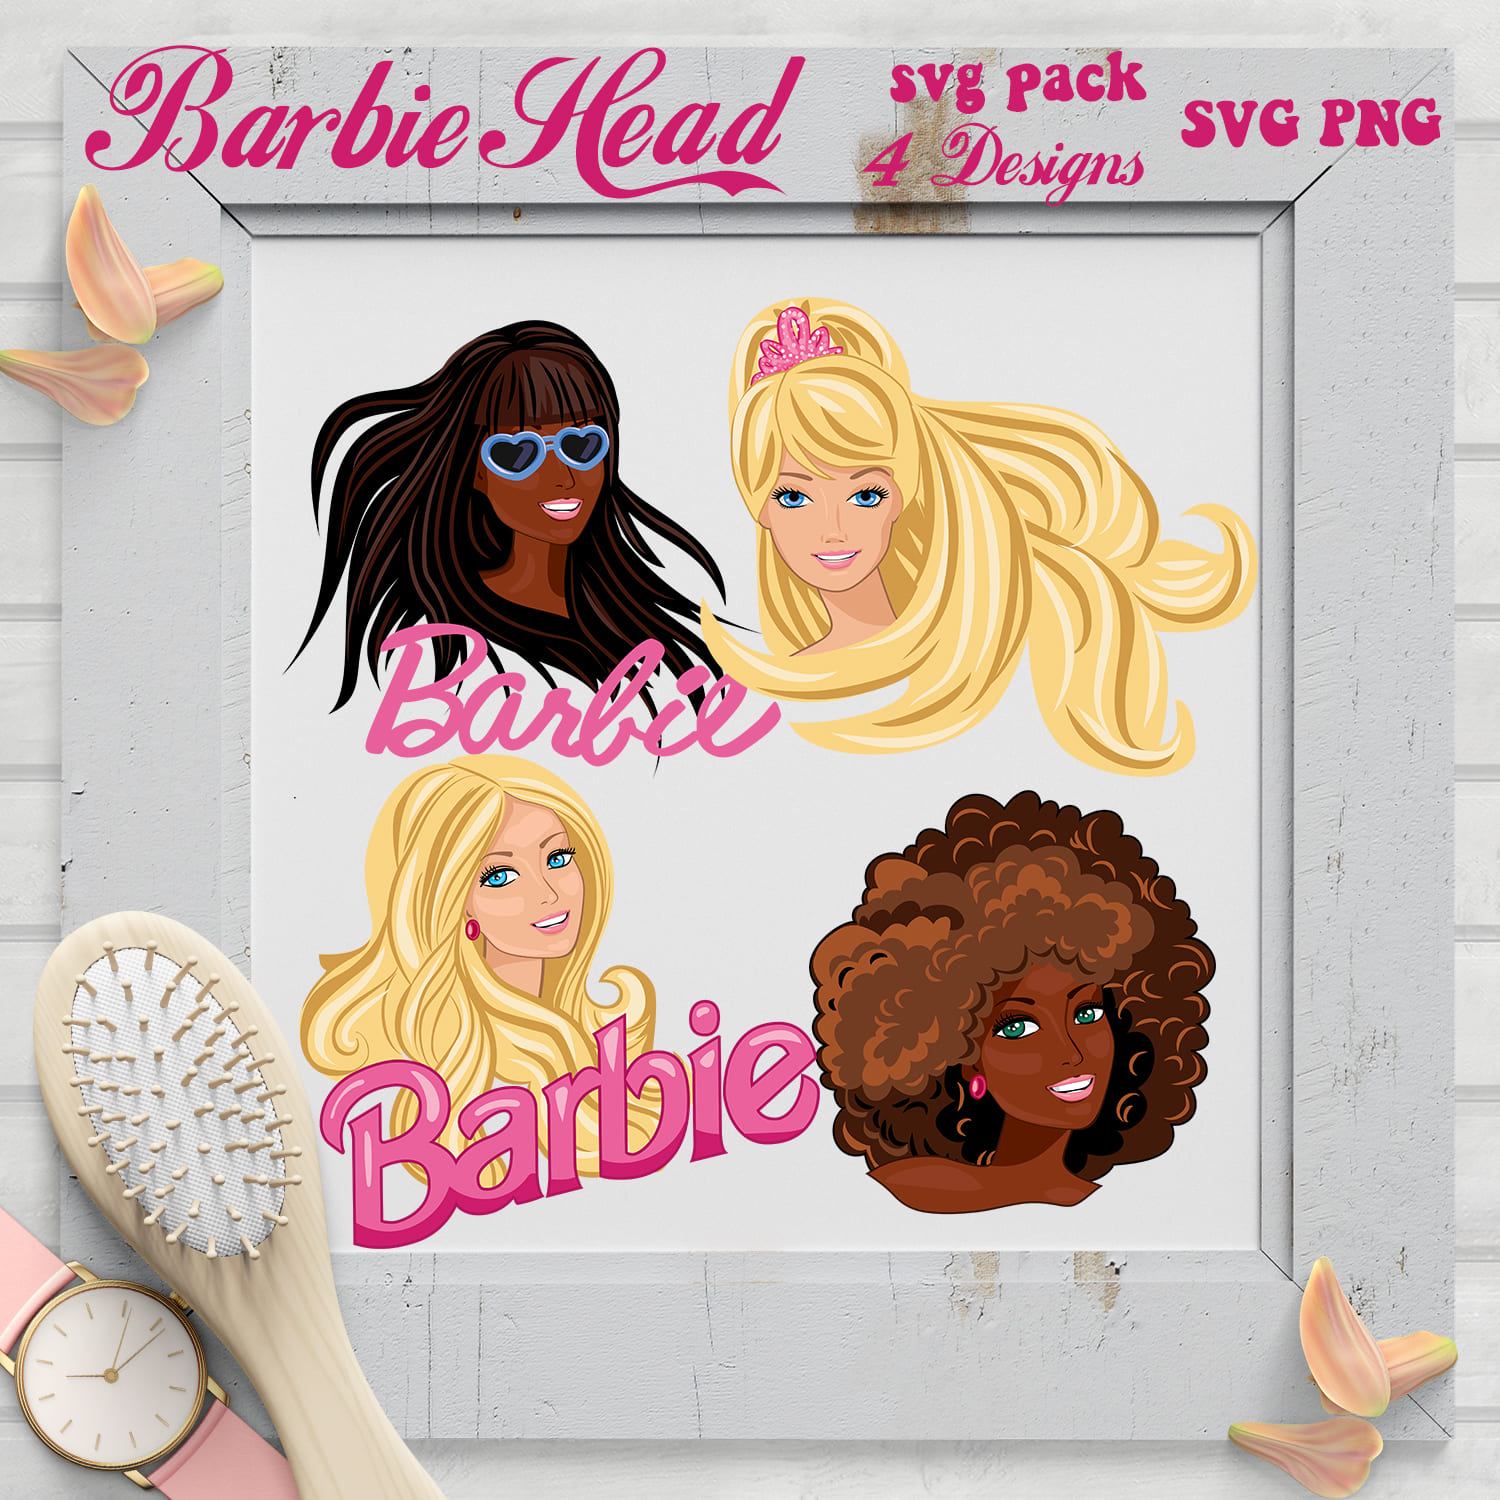 Barbie Head SVG Master Bundles